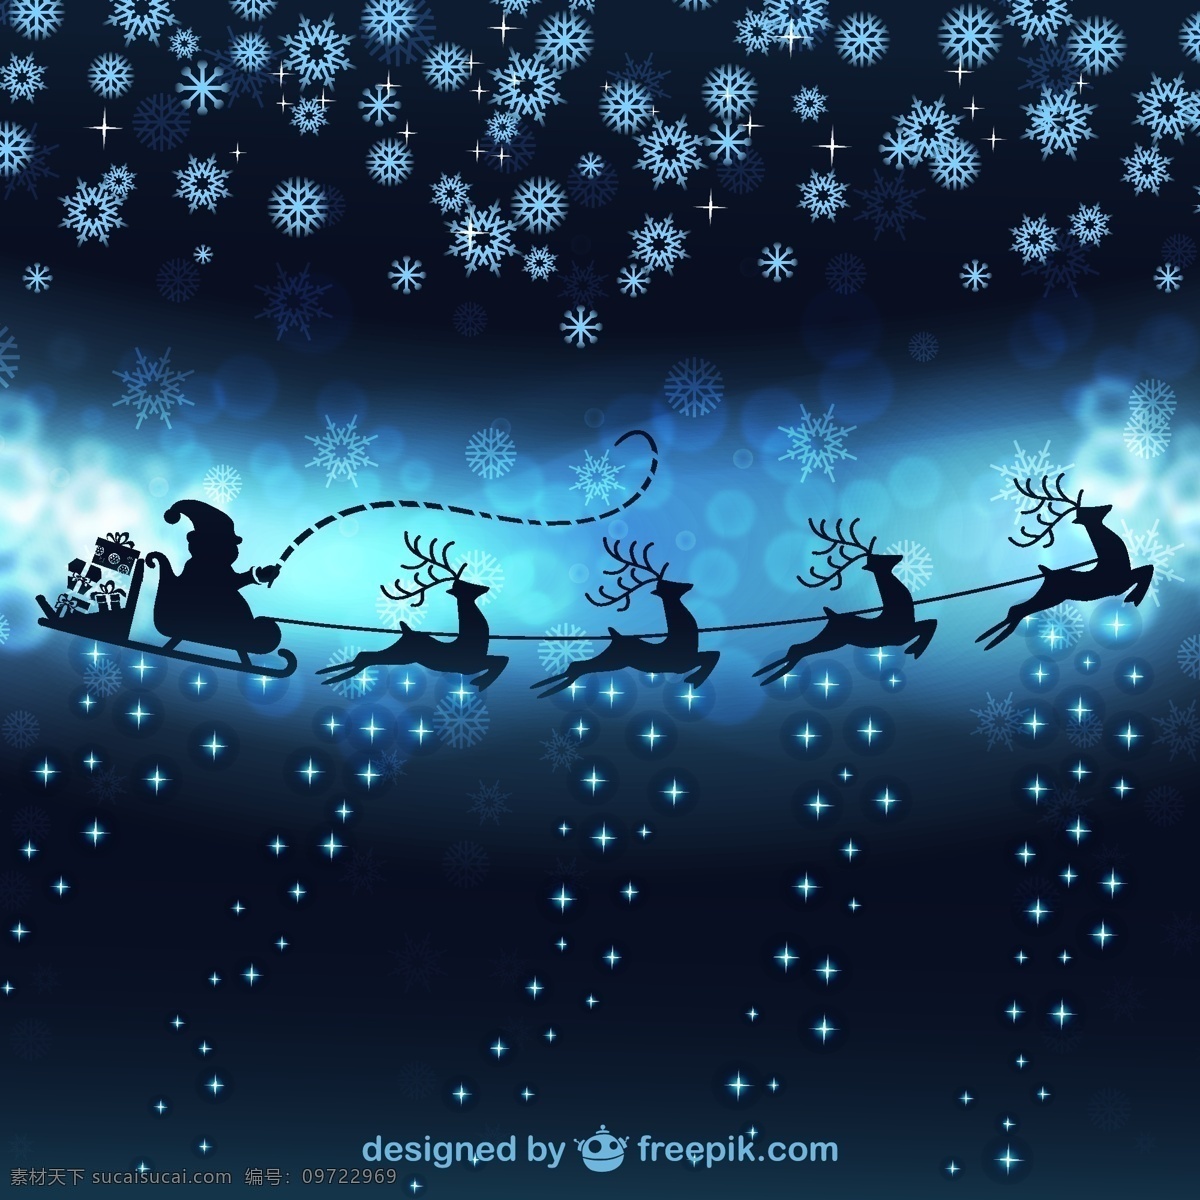 蓝色 圣诞 雪 背景 雪夜 璀璨圣诞雪 浪漫雪花背景 圣诞节驯鹿 圣诞雪橇 深蓝冬季背景 节日新年圣诞 文化艺术 节日庆祝